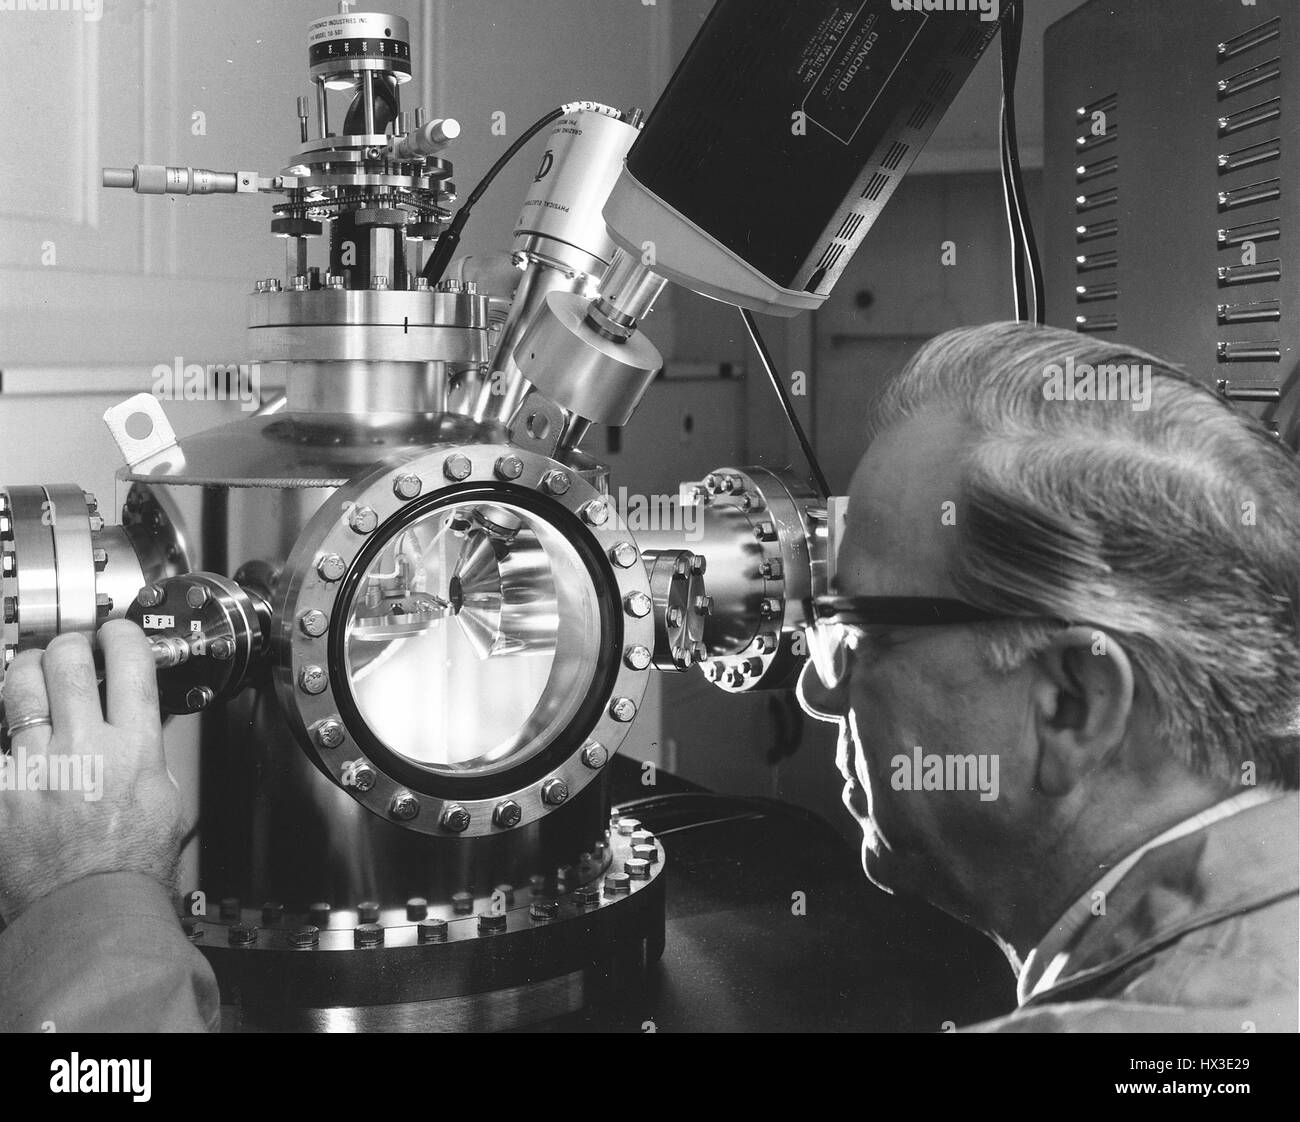 Uno scienziato utilizza una coclea spettrometro elettronico per determinare la composizione elementare di una superficie in corrispondenza del sito di Hanford in Washington, 1974. Immagine cortesia del Dipartimento Americano di Energia. Foto Stock